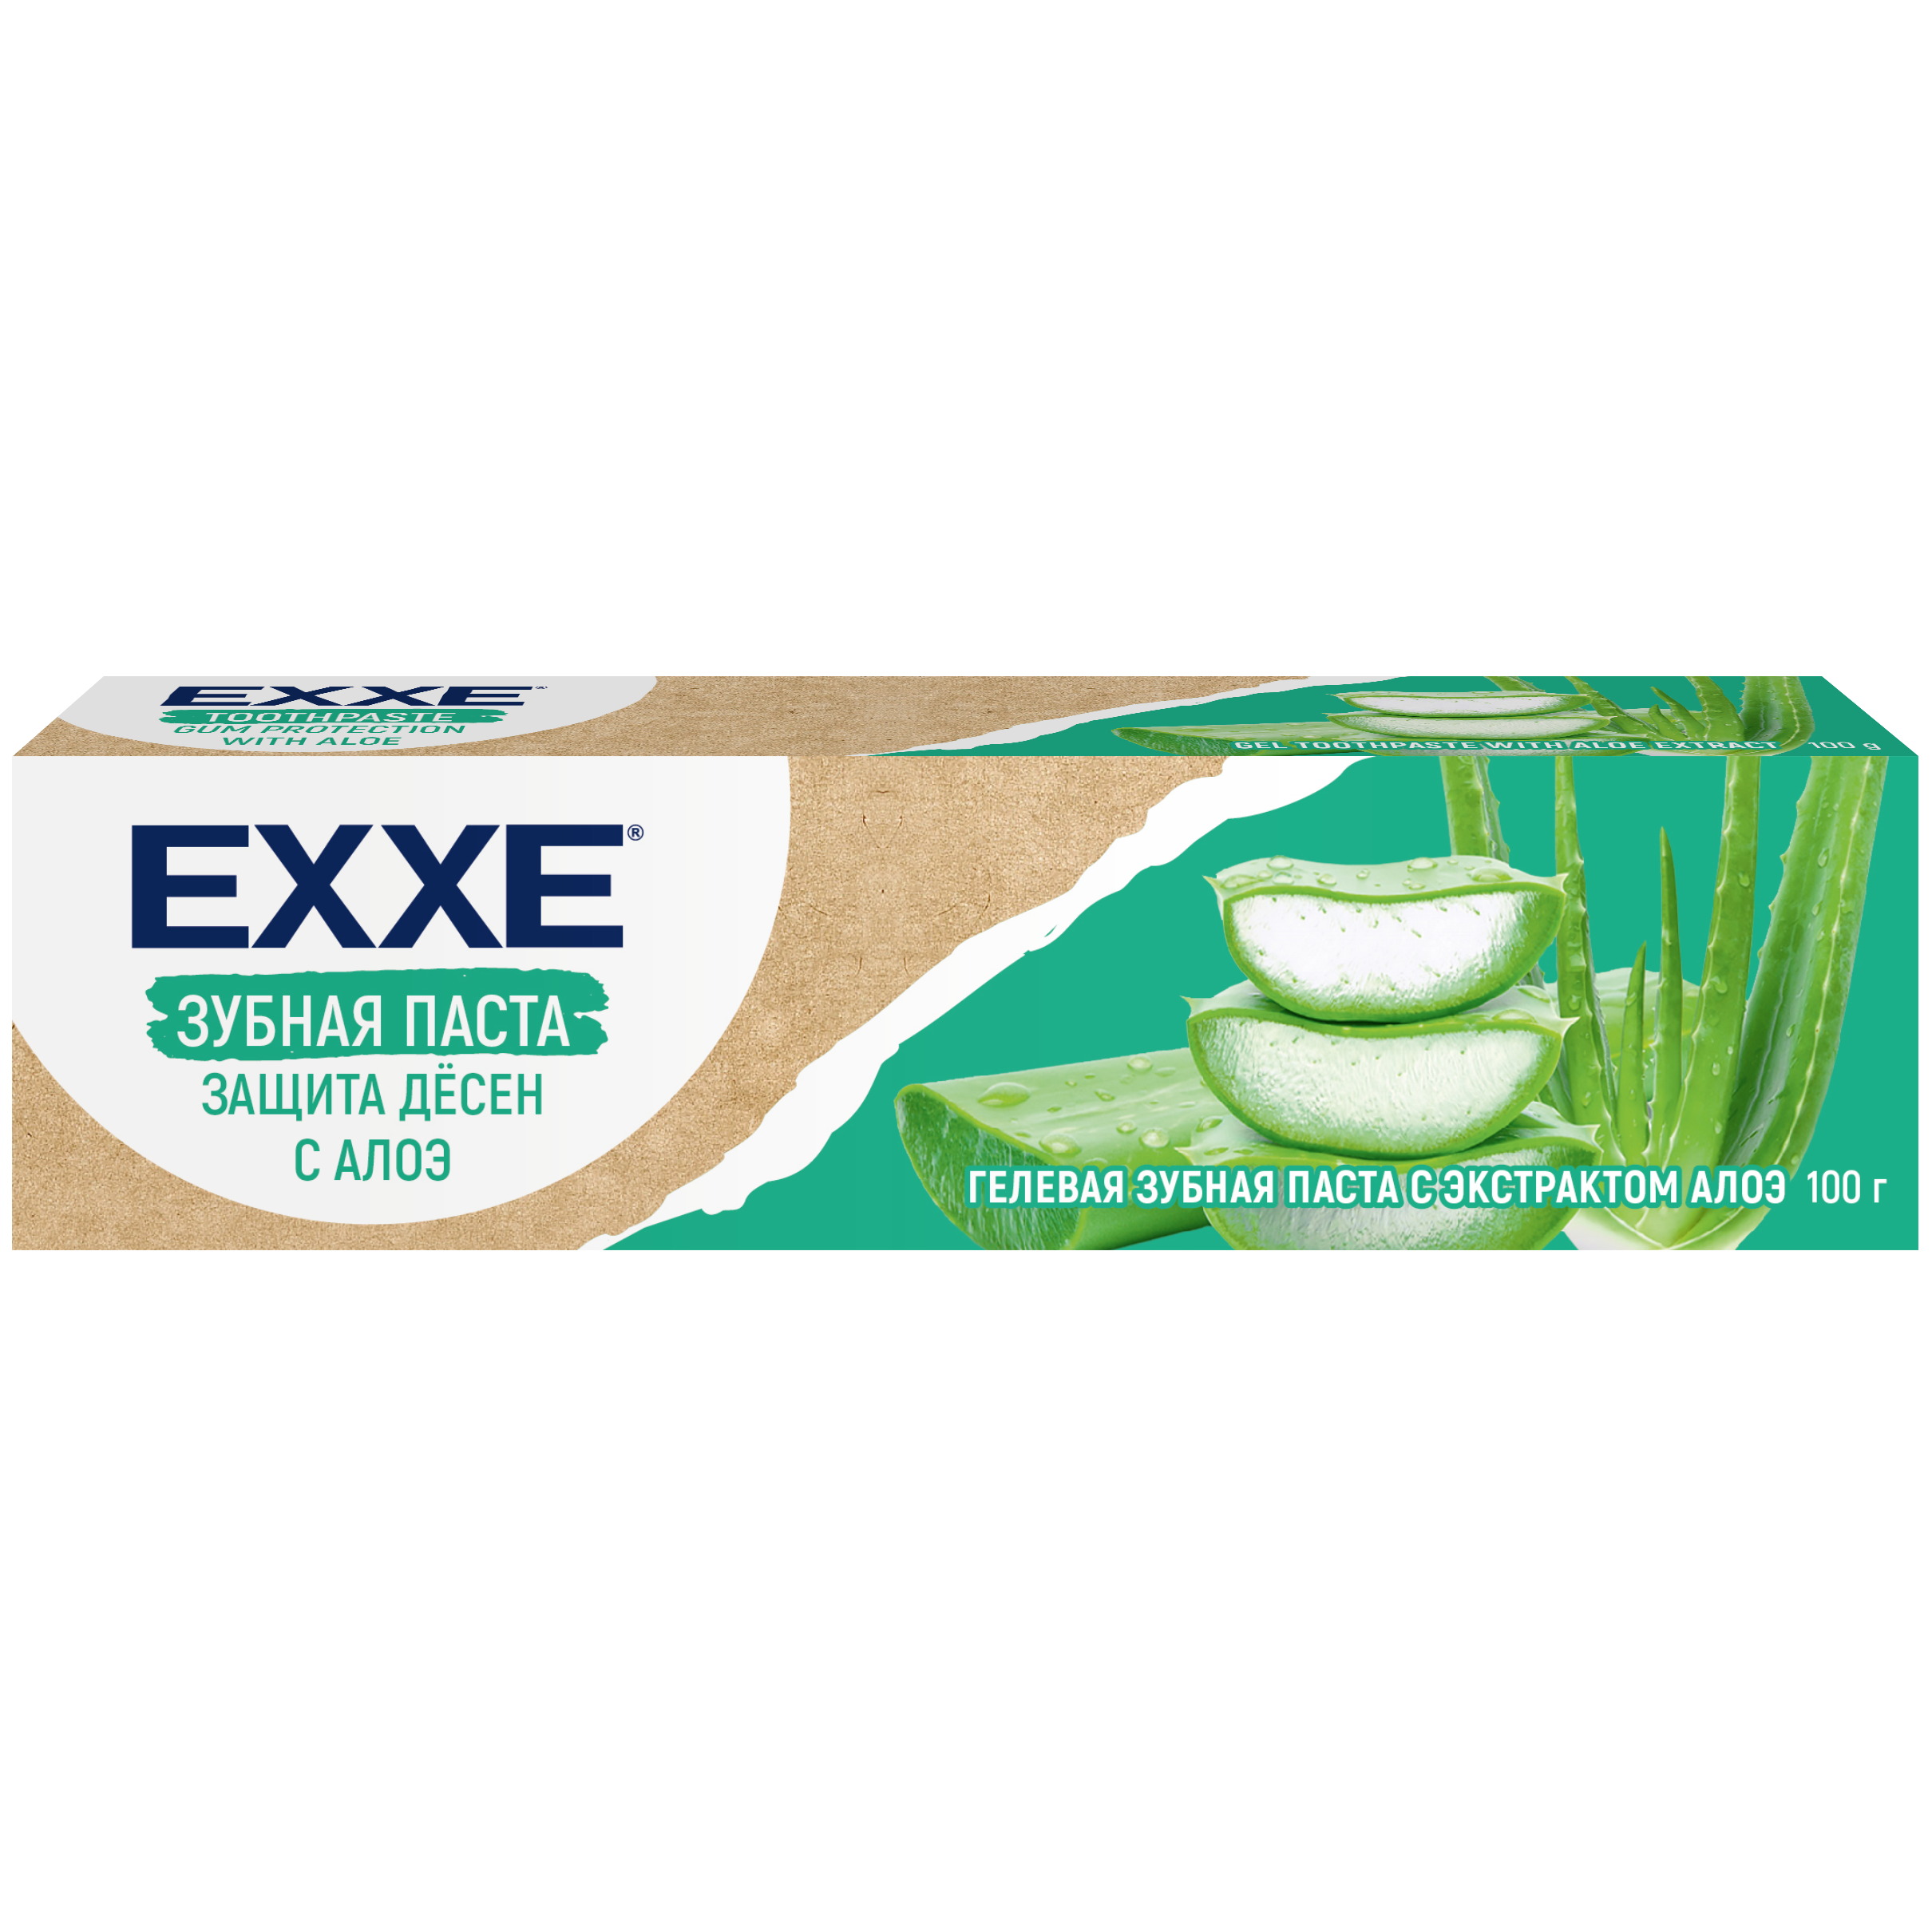 Зубная паста EXXE Защита дёсен с Алоэ, 100 г зубная паста natura siberica арктическая защита 100 гр